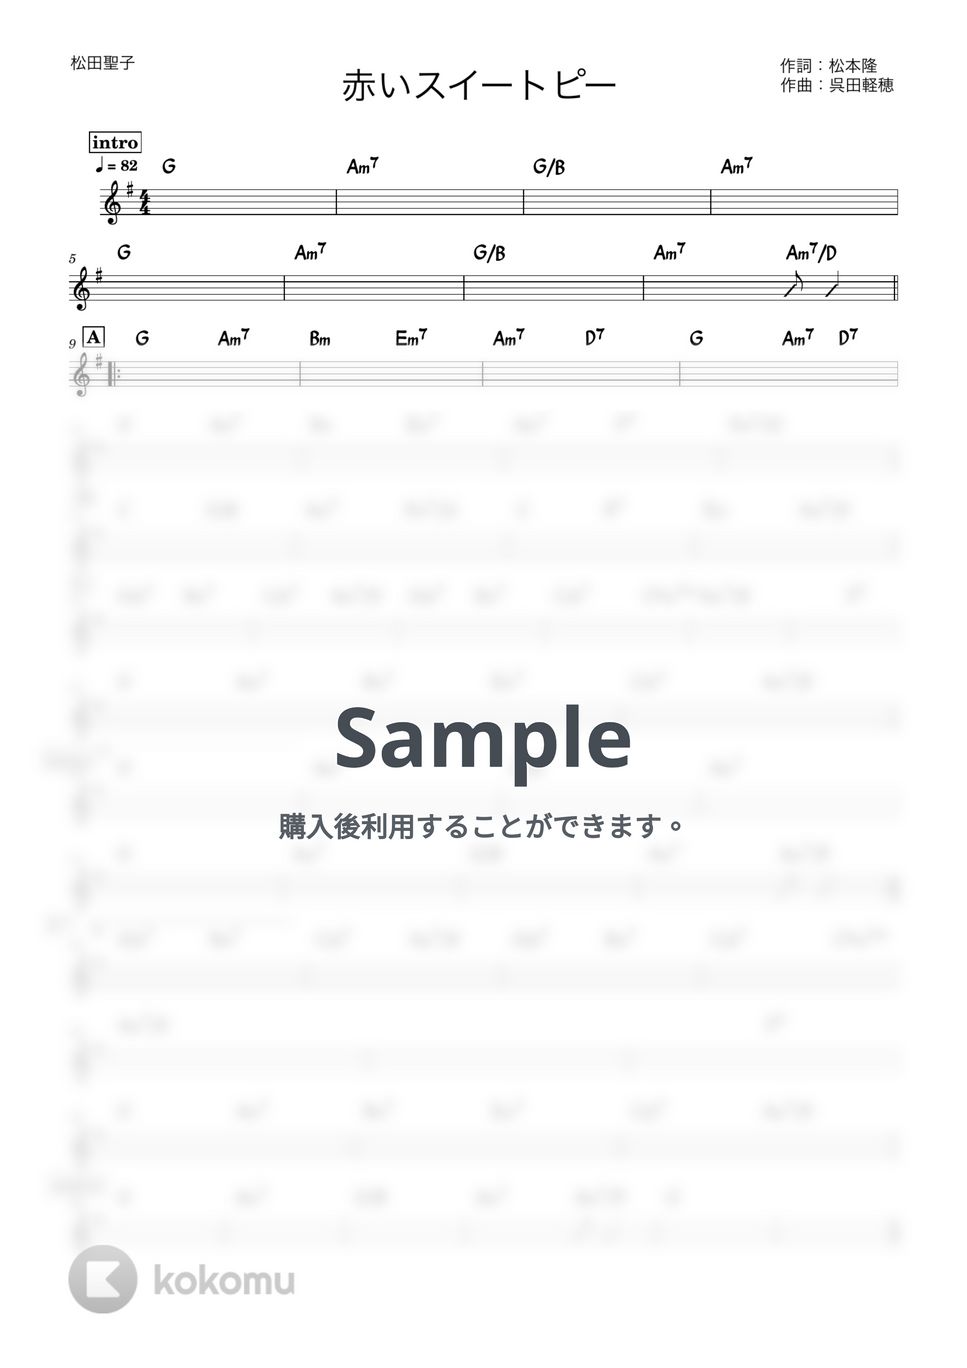 松田聖子 - 赤いスイートピー (バンド用コード譜) by 箱譜屋